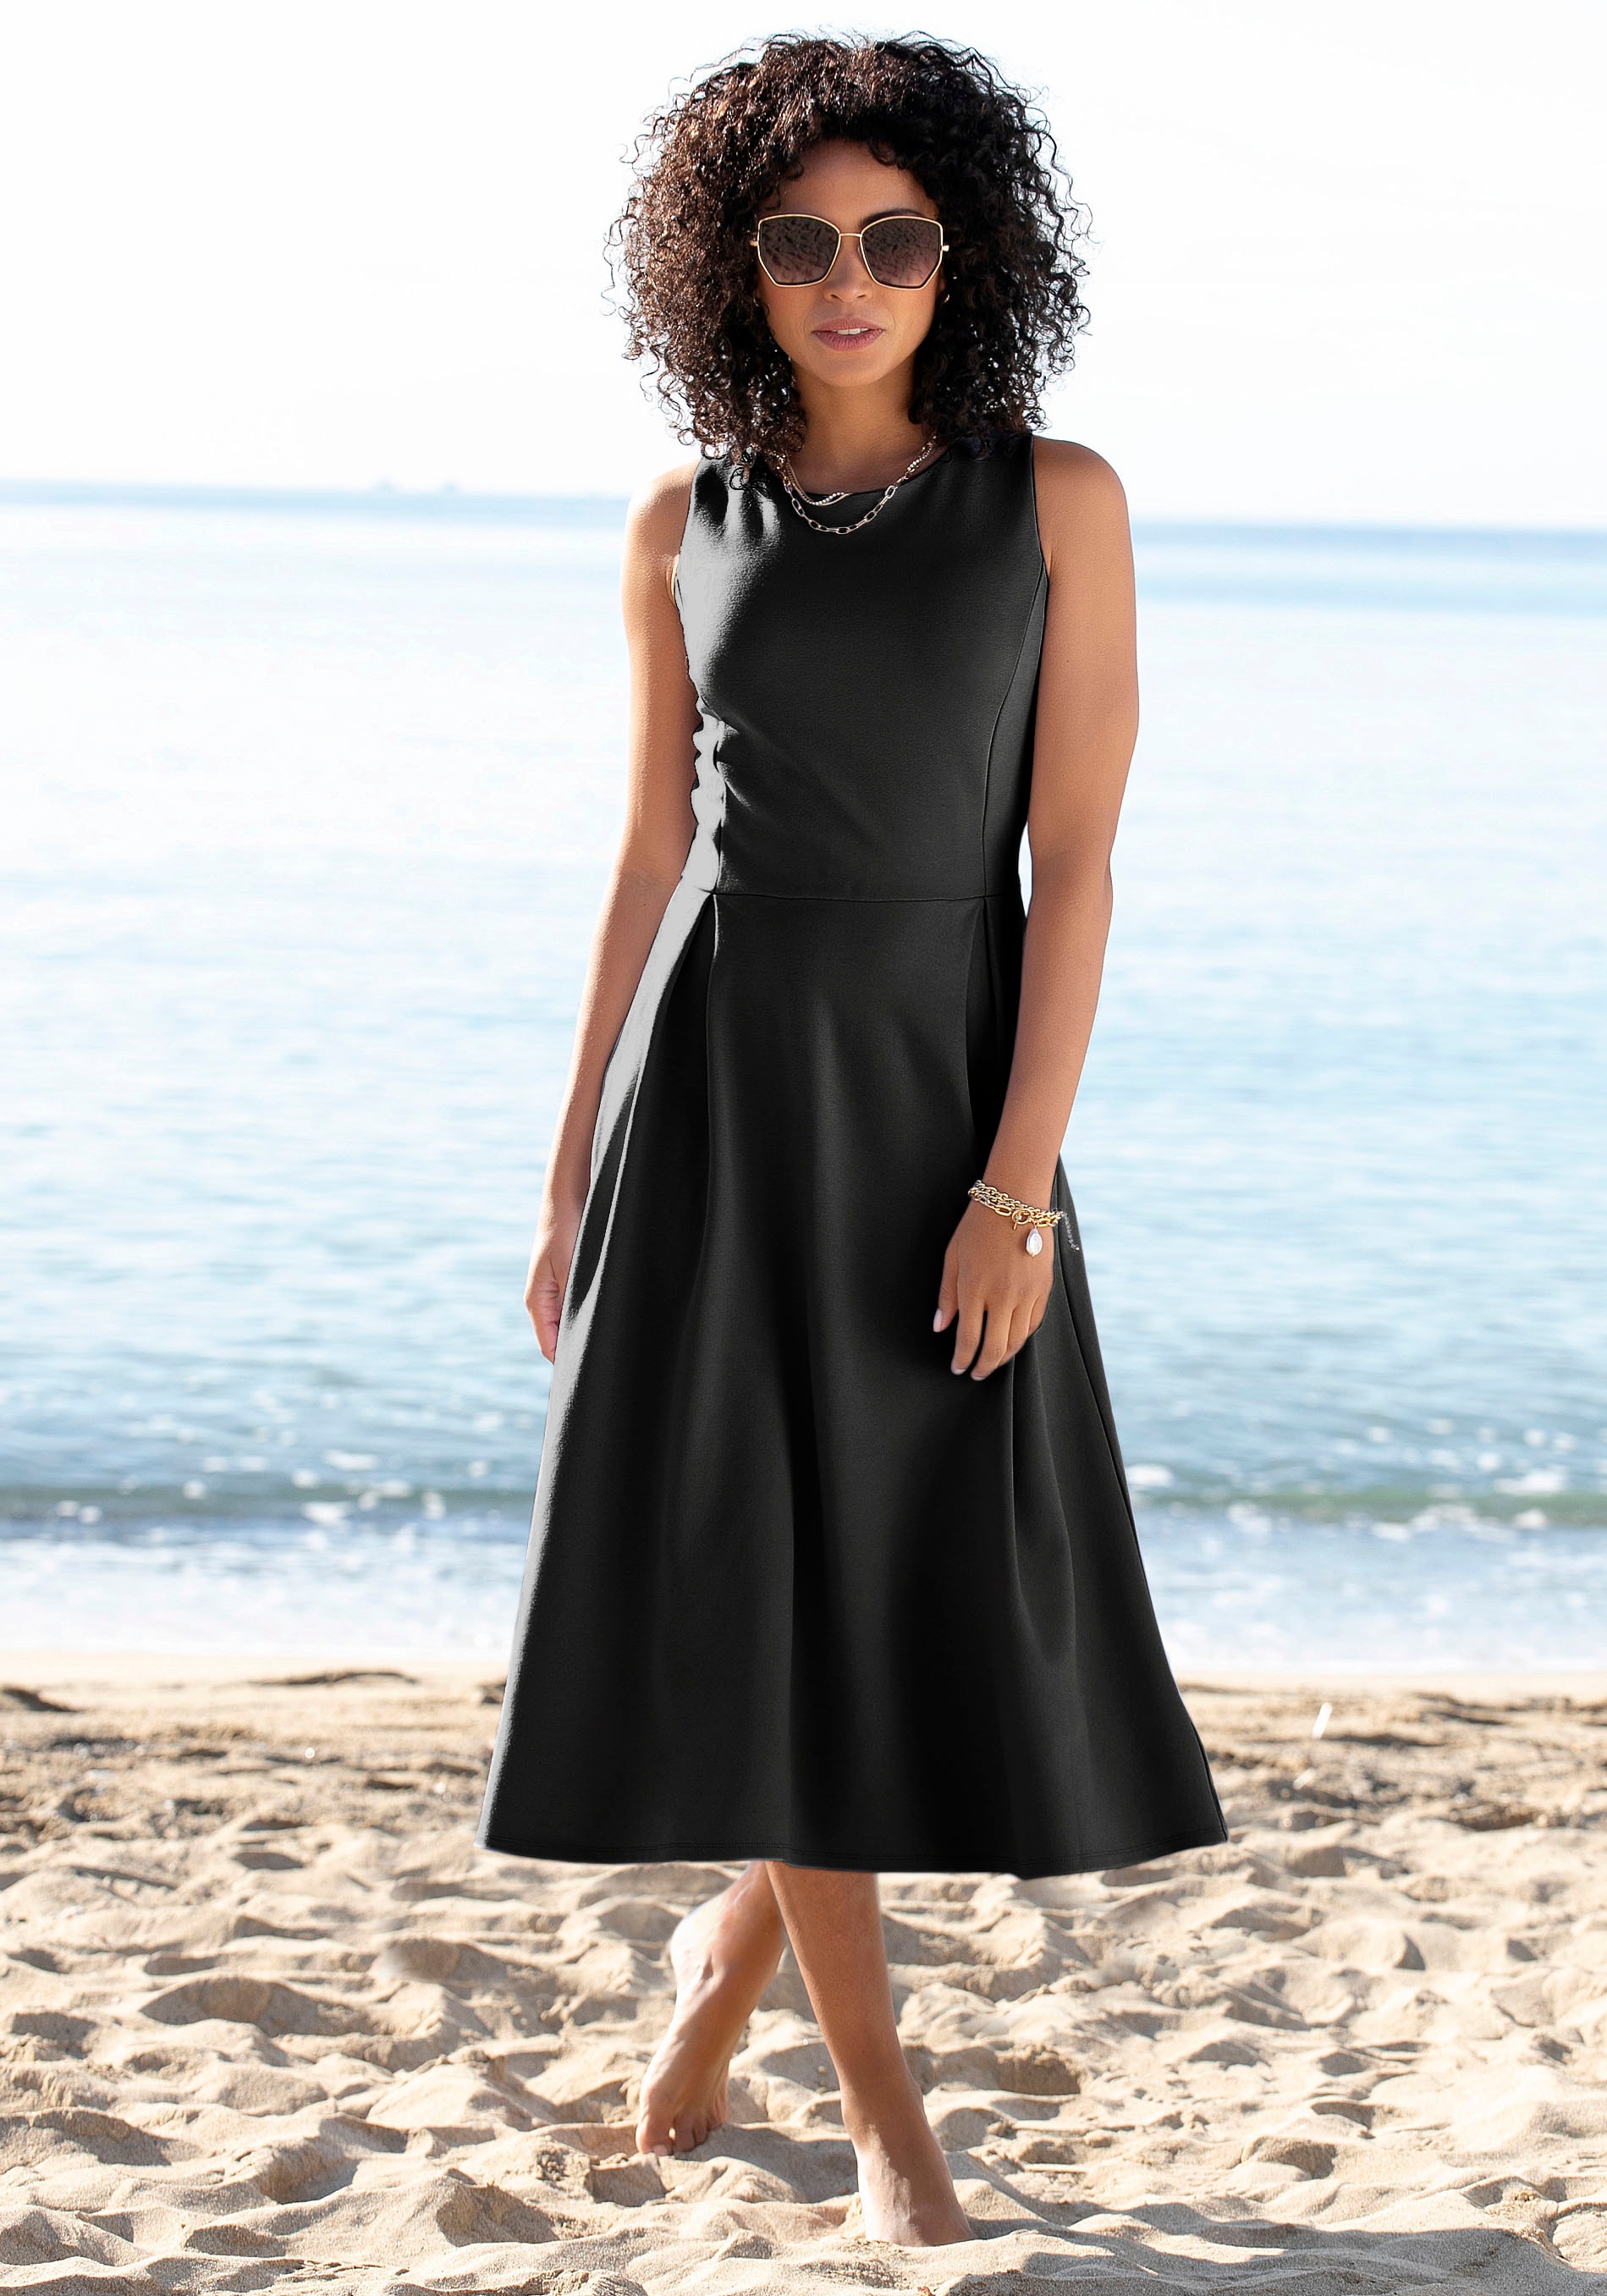 Schwarzes Sommerkleid Sommerkleider | OTTO online kaufen bei